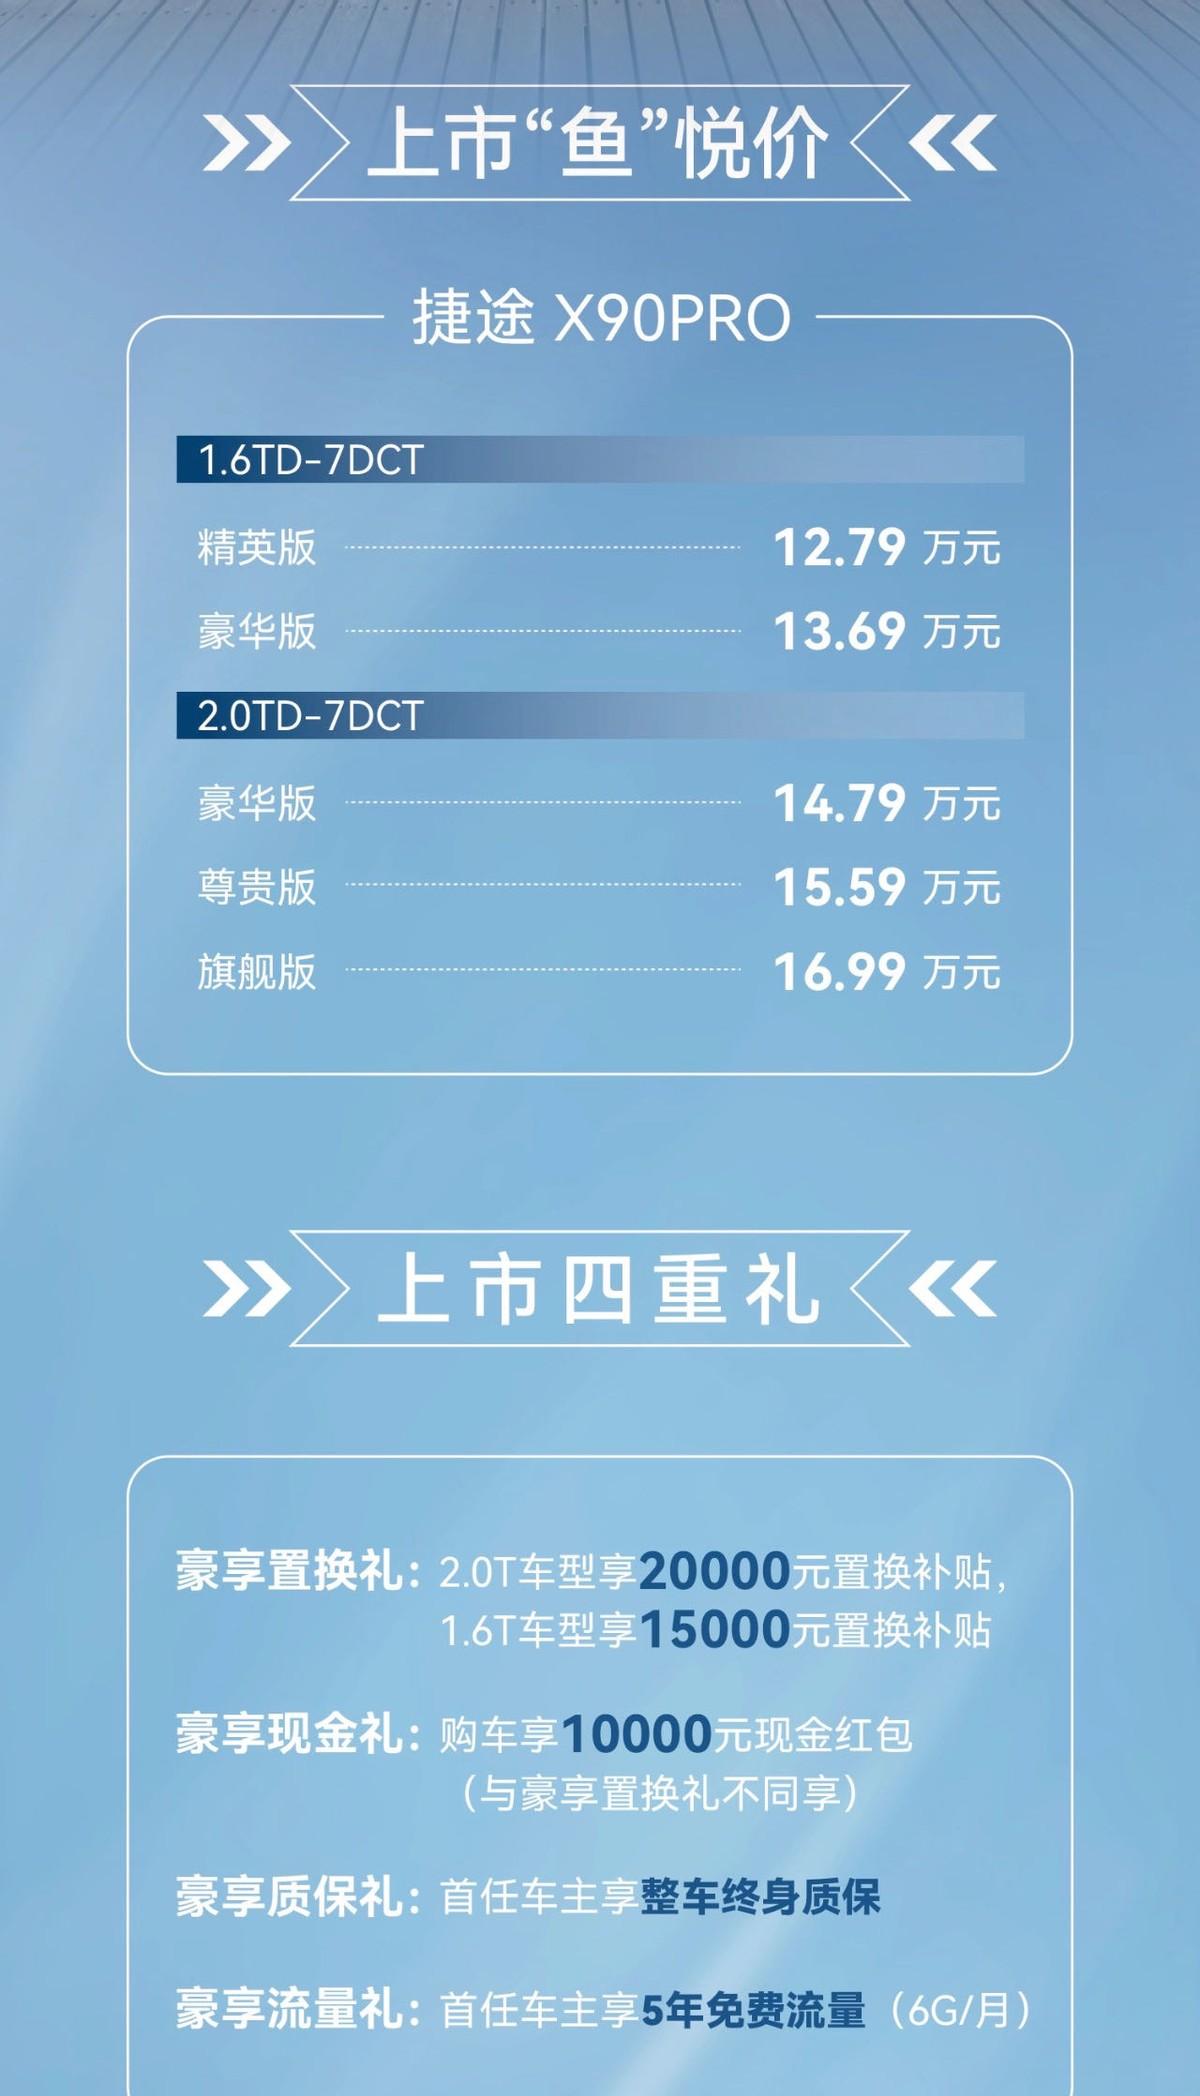 捷途杯钓王争霸赛-华南站 捷途X90PRO上市12.79万起售